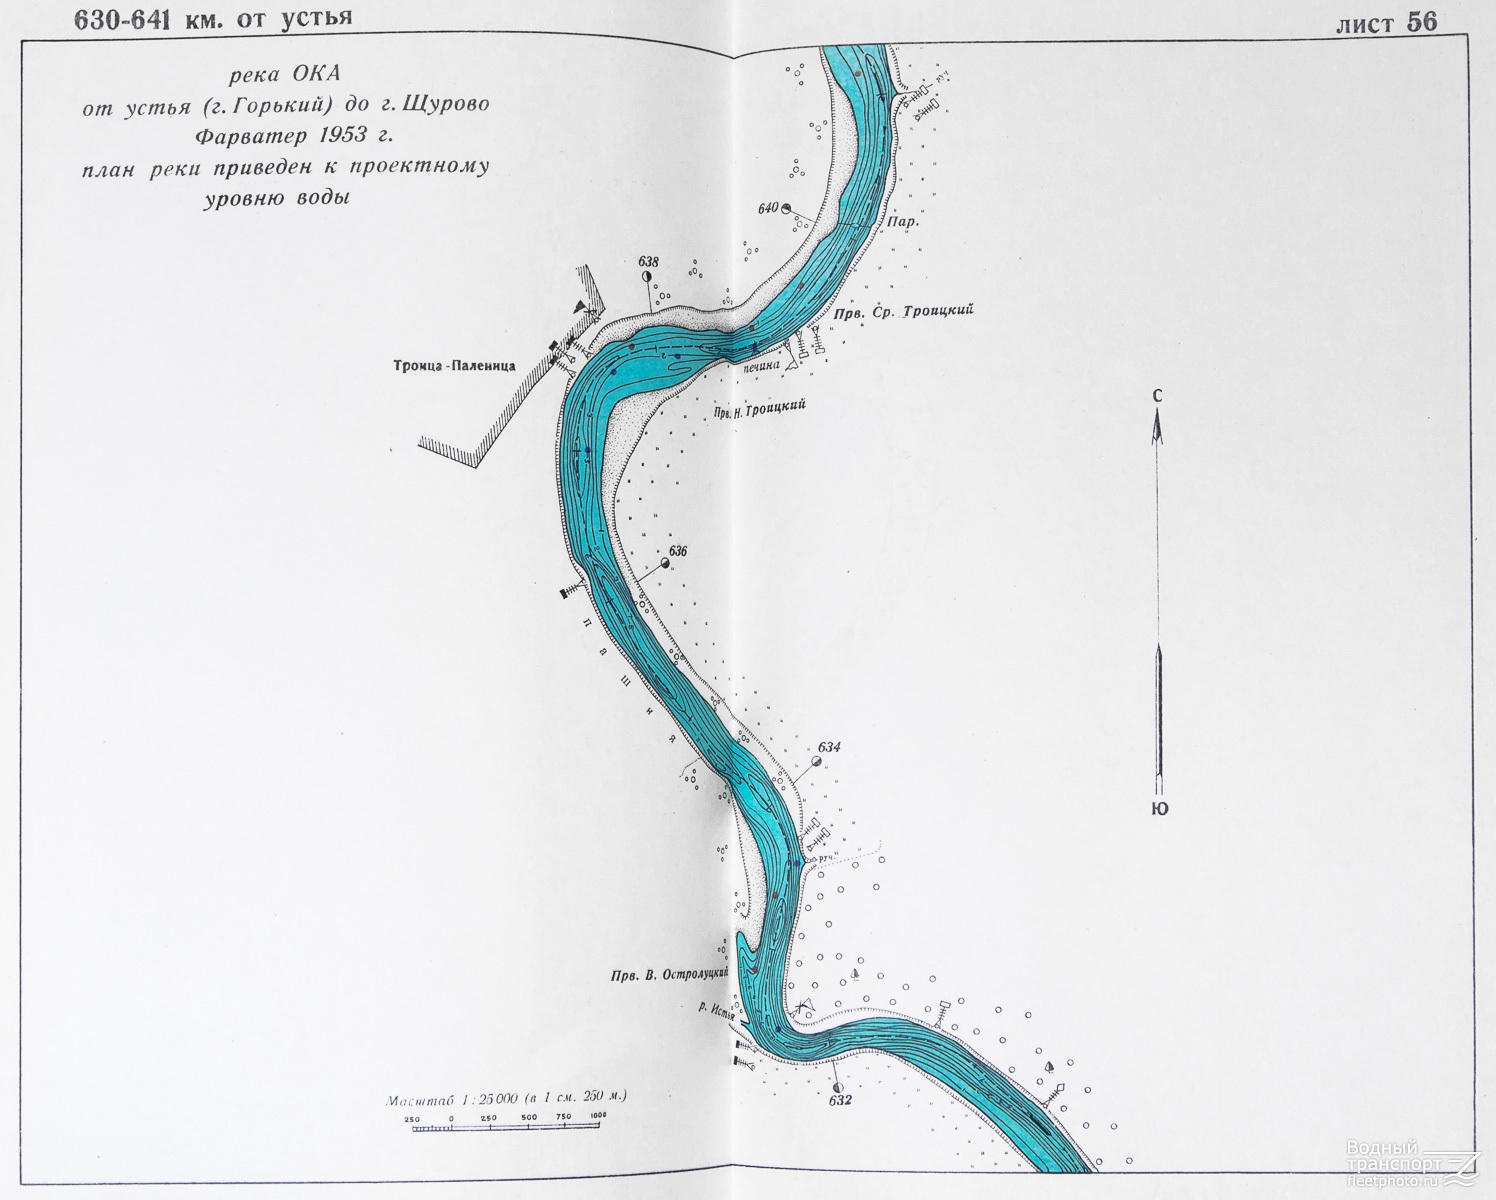 Все реки текут направление. Схема реки Оки. Протяженность реки Ока от истока до устья. Схема течения реки Оки. Схема реки Ока от истока до устья.